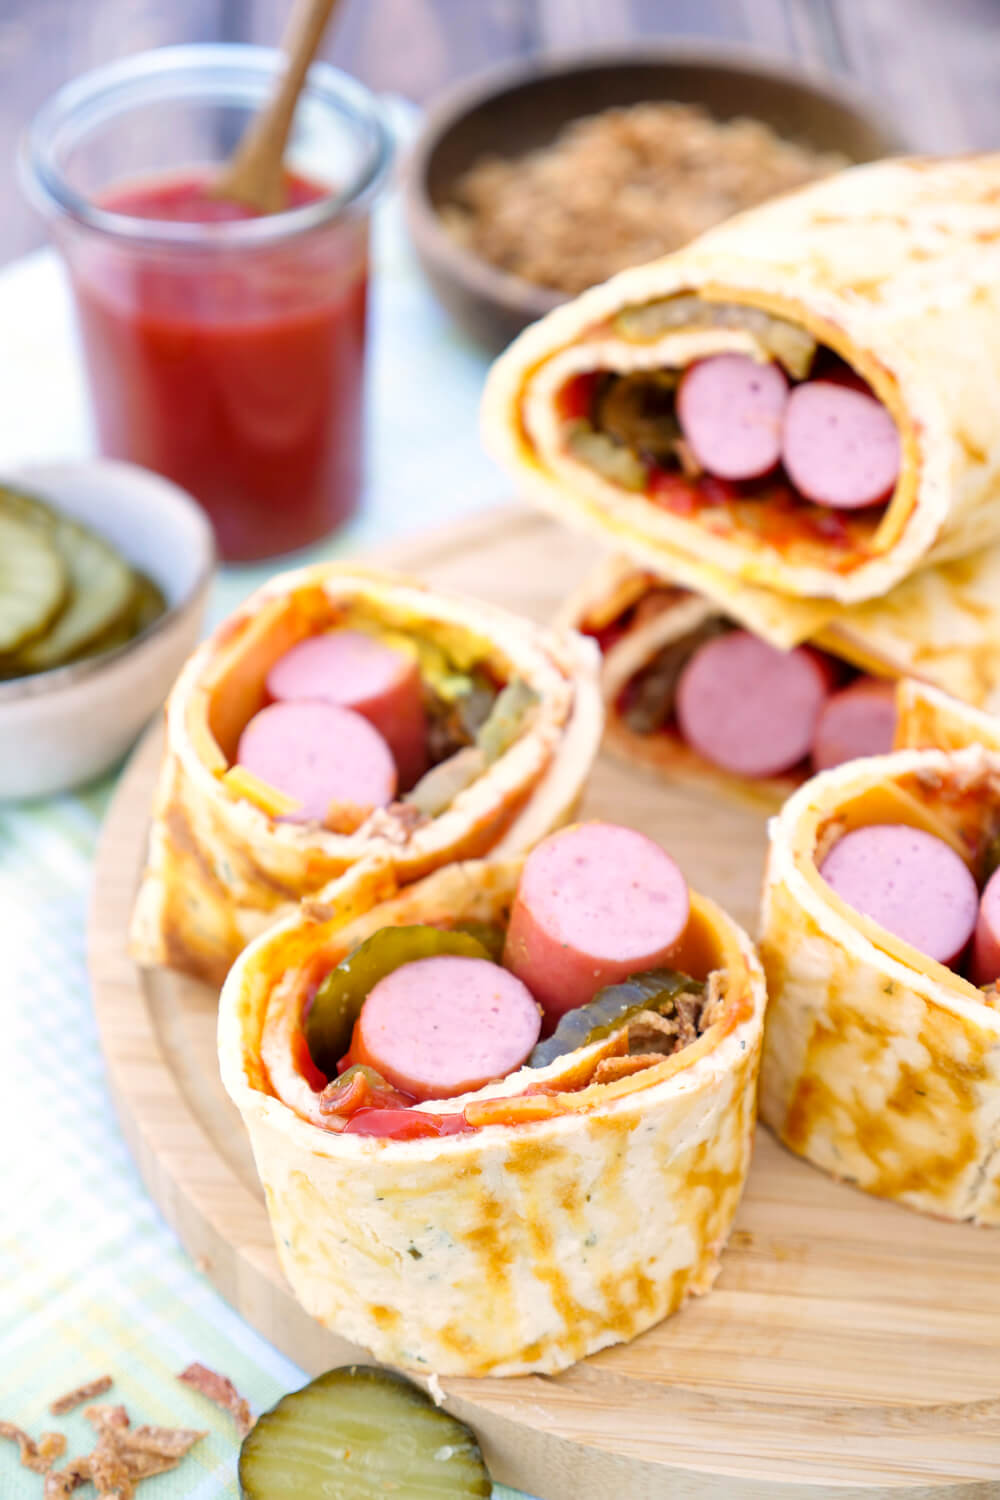 Low Carb Hotdog Rolle mit Würstchen, Gurken und Röstzwiebeln - schnelles Low Carb Fastfood, das der ganzen Familie schmeckt